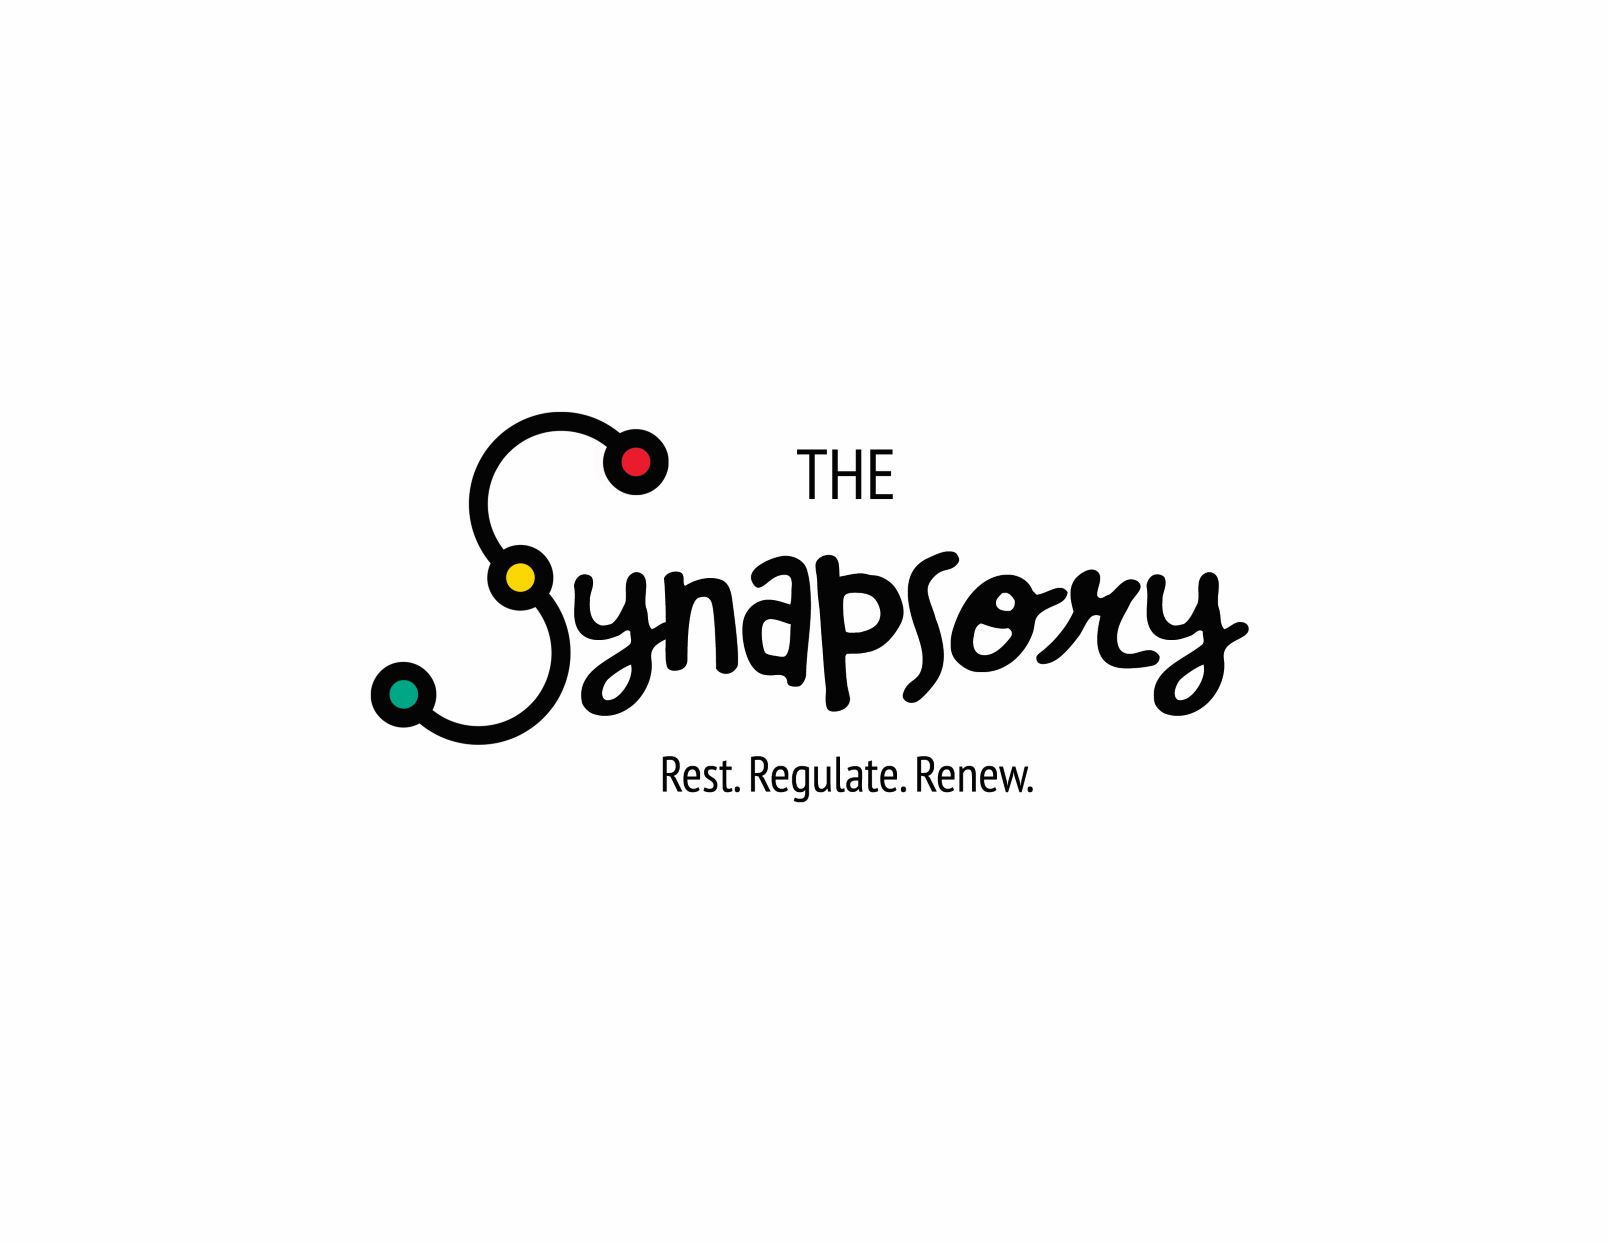 The Synapsory logo